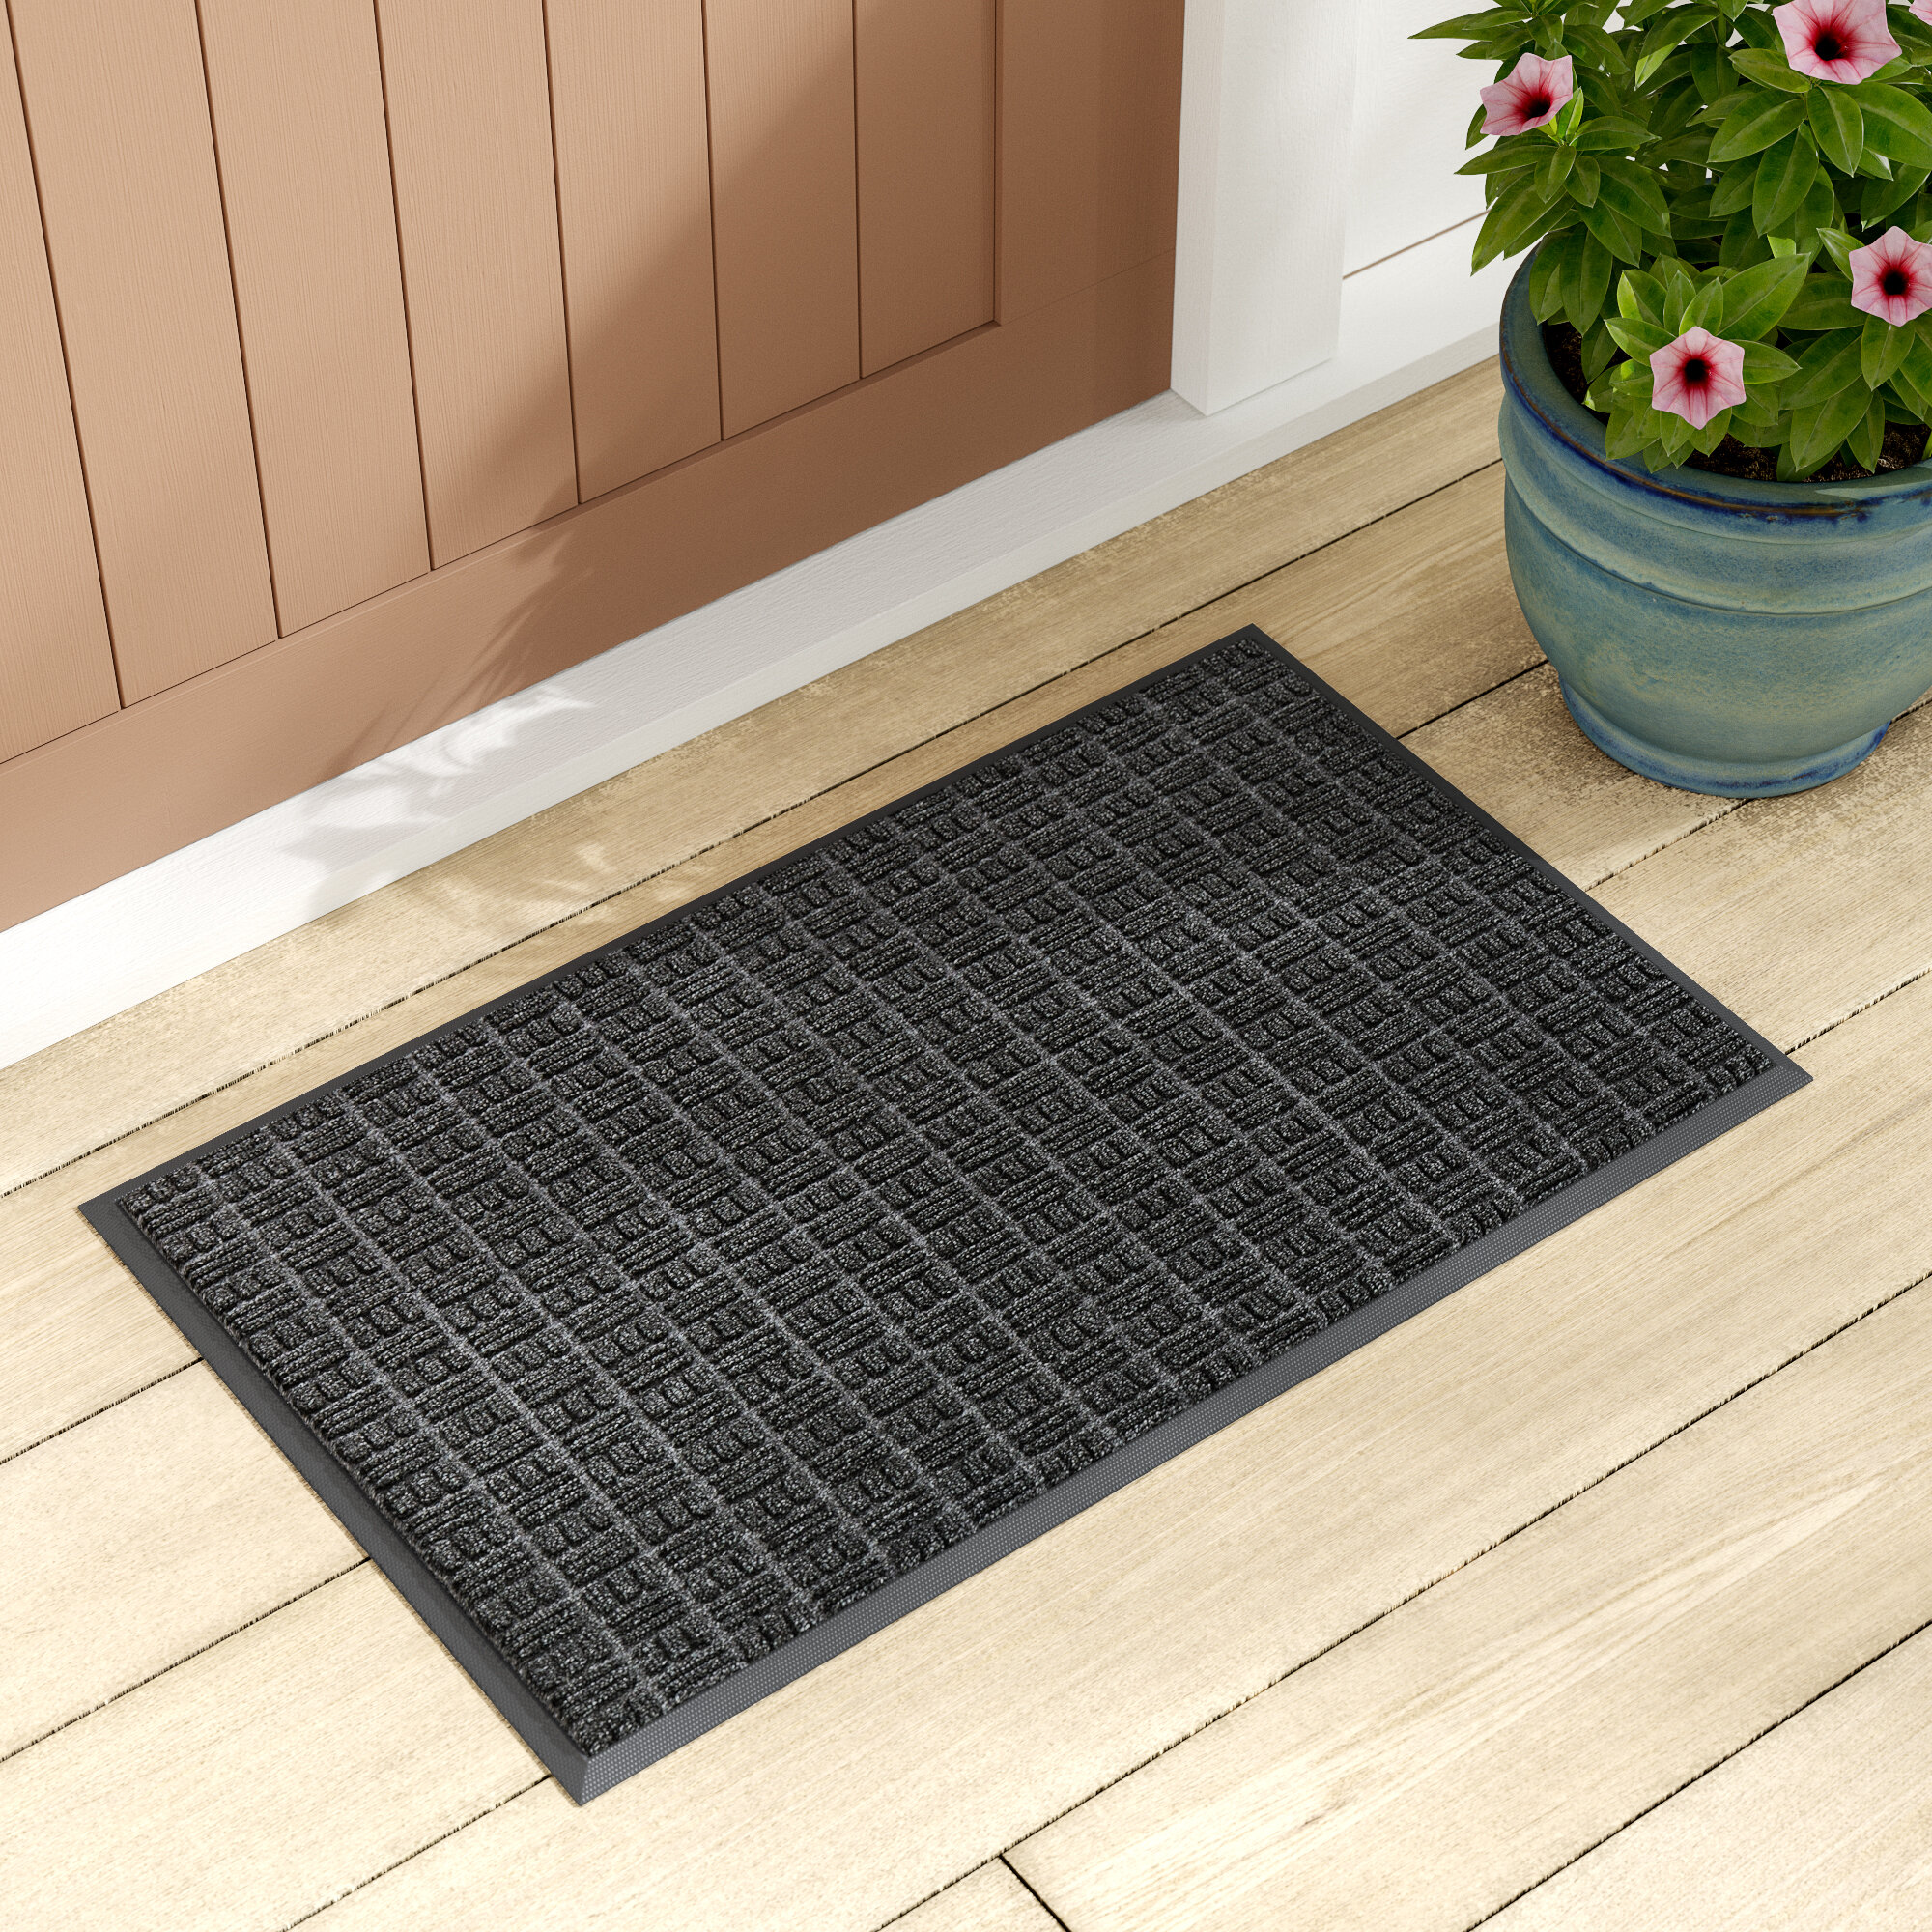 Details about   2Pack Indoor Mat Door Mat Heavy Duty Non Slip Rubber Backing Doormat 29.5×16.9 